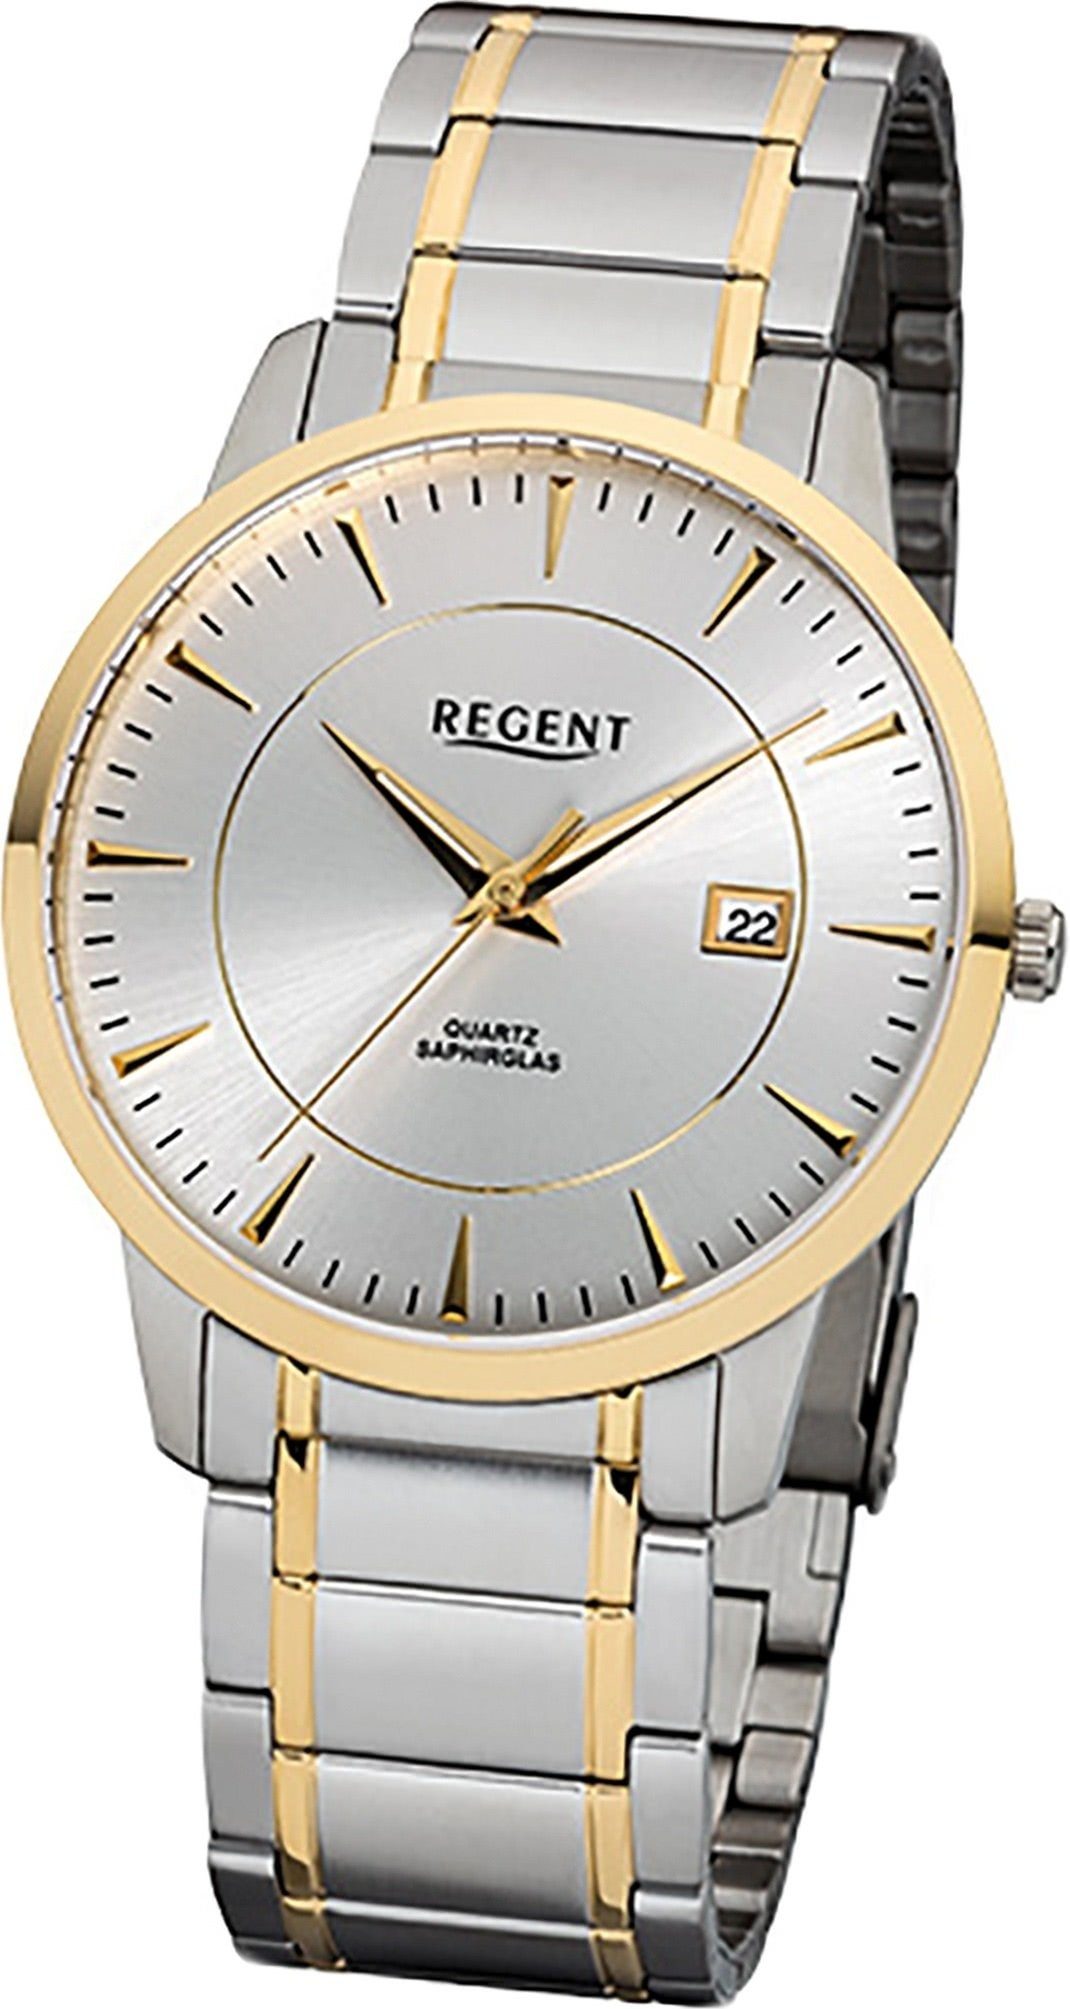 Edelstahl Regent F-1046, Herren mittel gold, Uhr Regent Quarzuhr Edelstahlarmband rundes Gehäuse, (39mm) silber, Herrenuhr